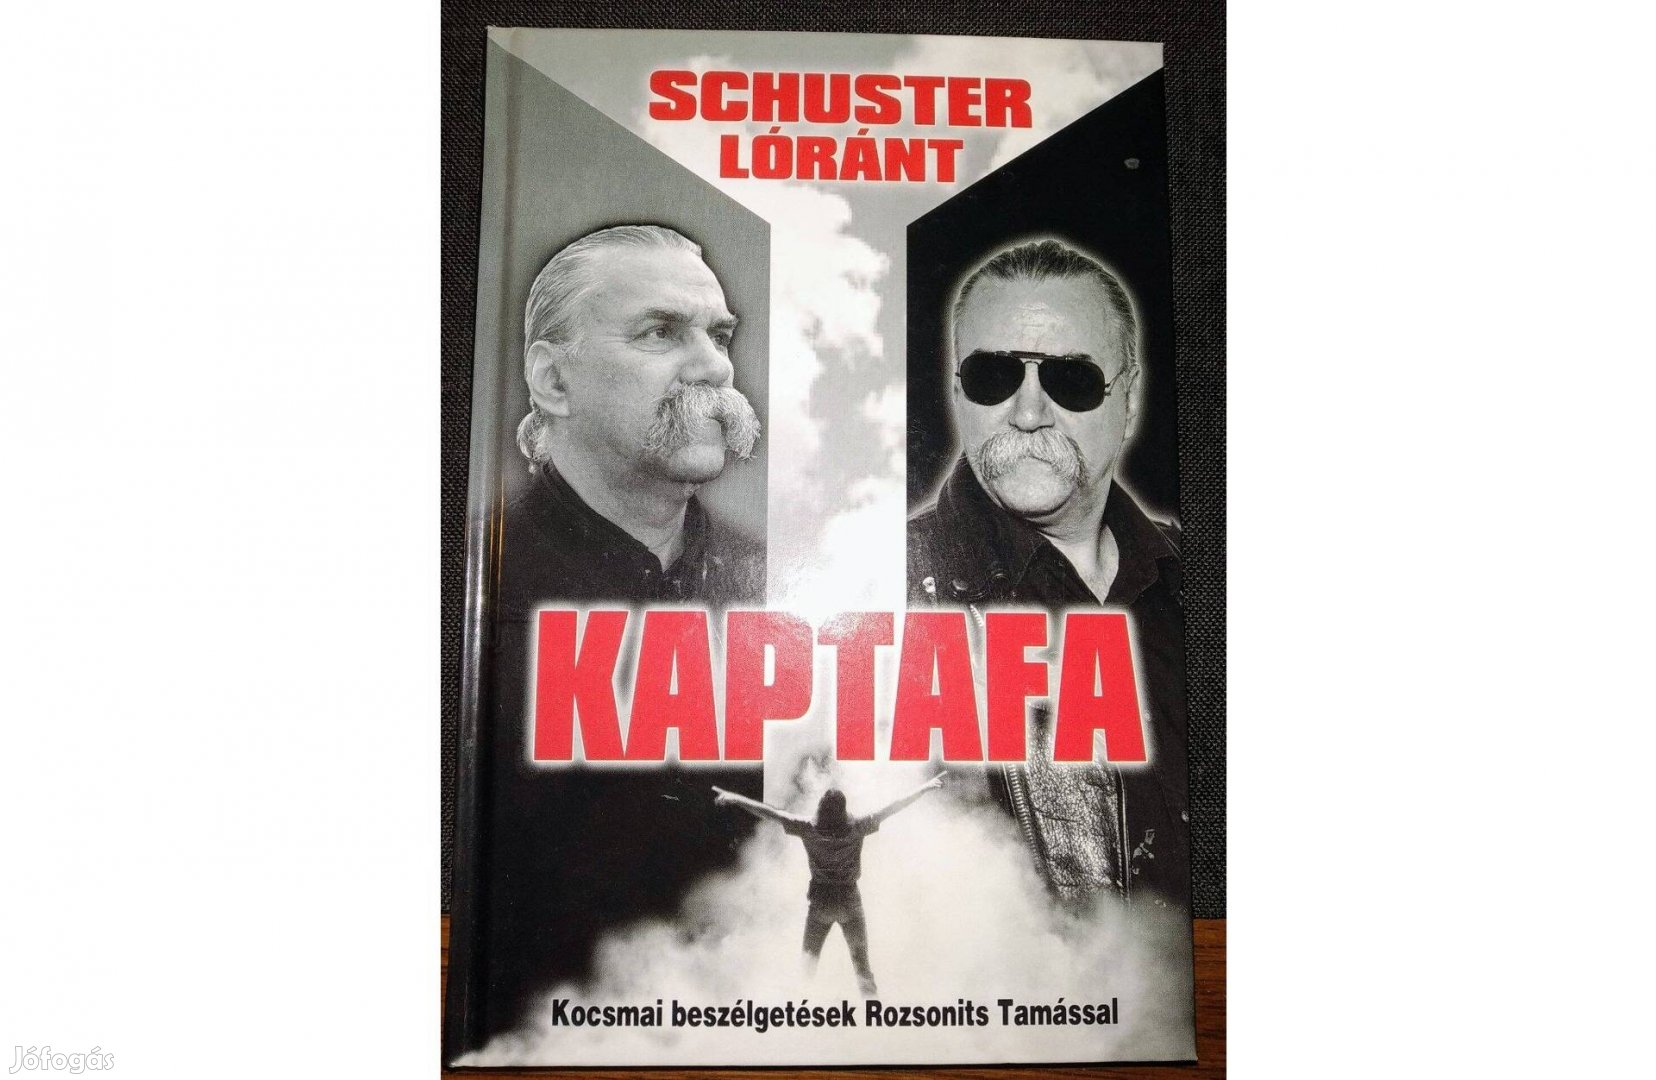 Kaptafa - Kocsmai beszélgetések Rozsonyits Tamással Schuster Lóránt